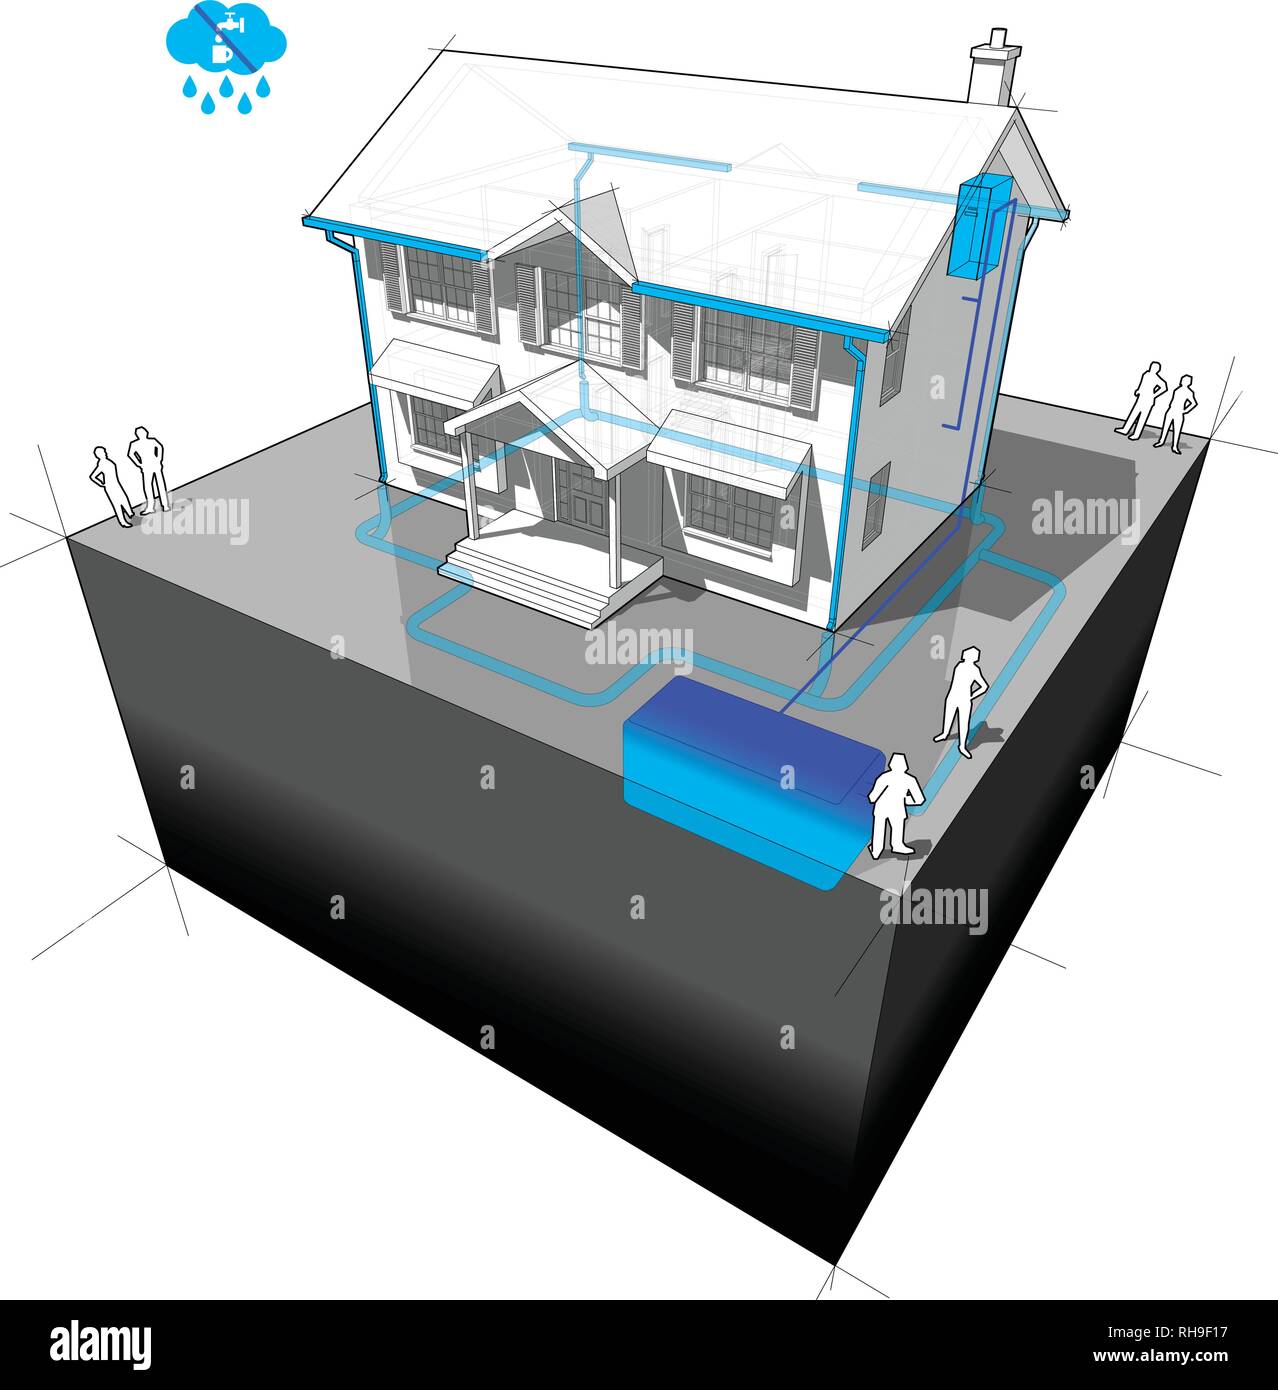 Diagramm eines klassischen Haus im Kolonialstil mit regenwassernutzung System Stock Vektor